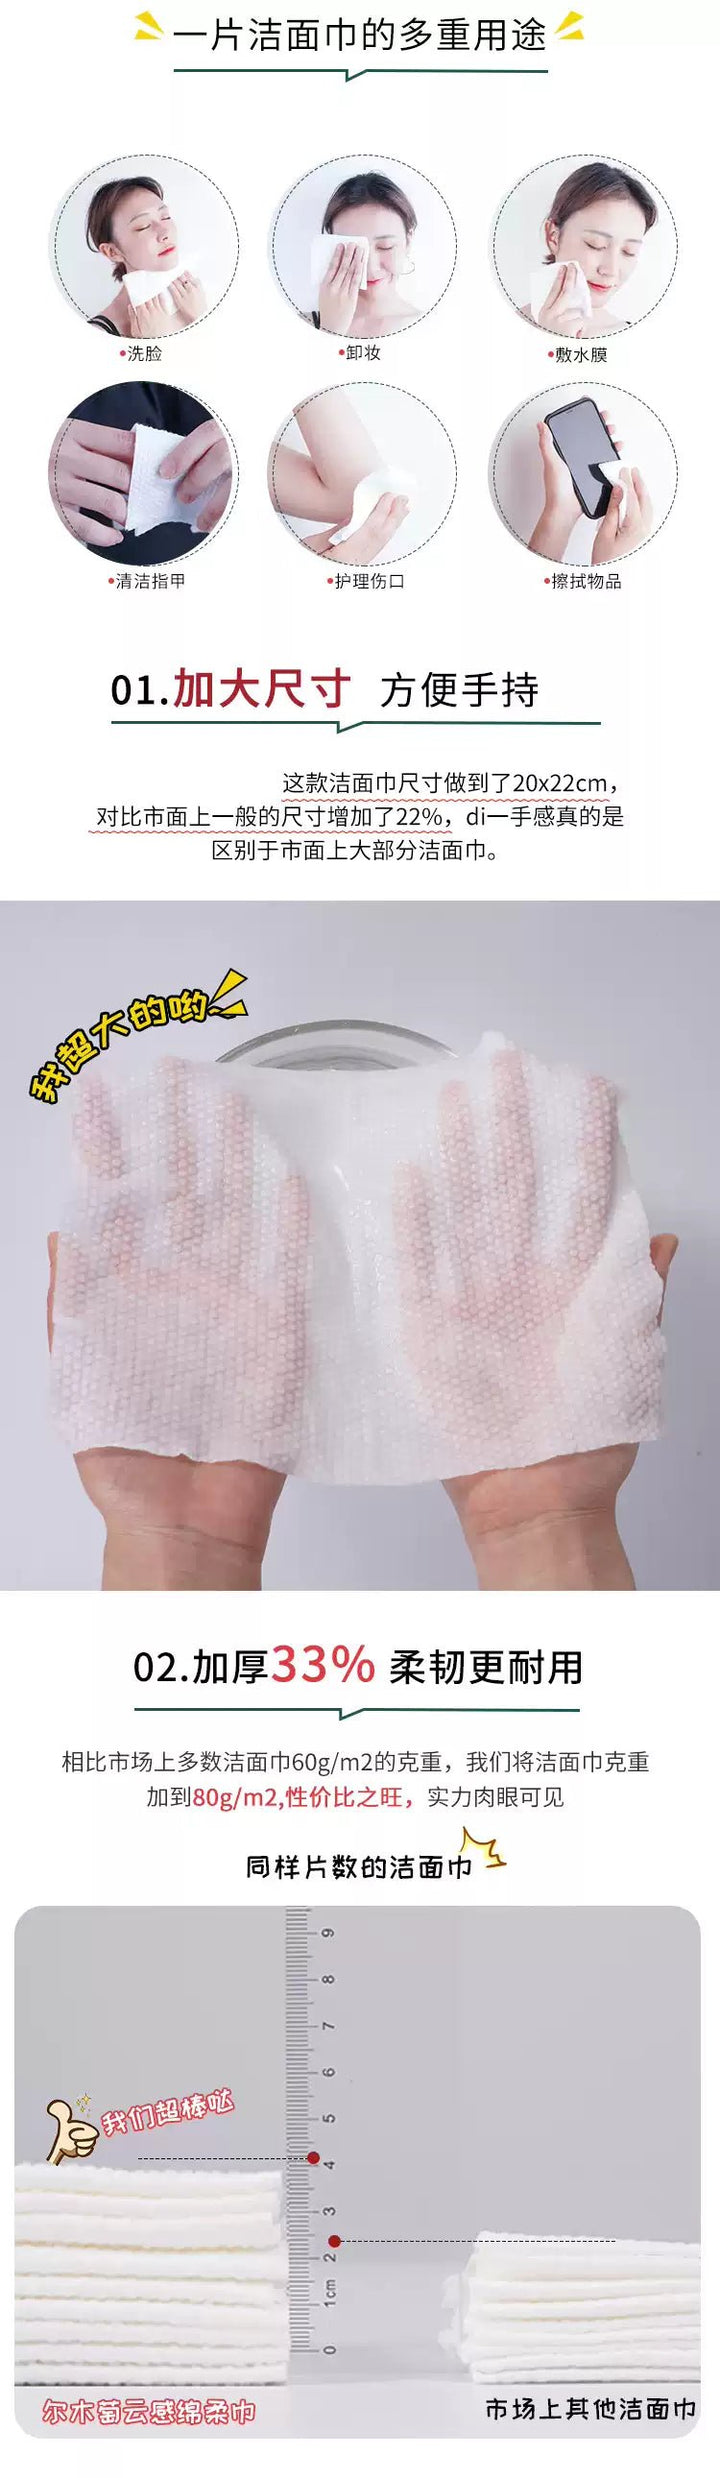 AMORTALS Facial Cleansing Towel Wipes 100Pcs